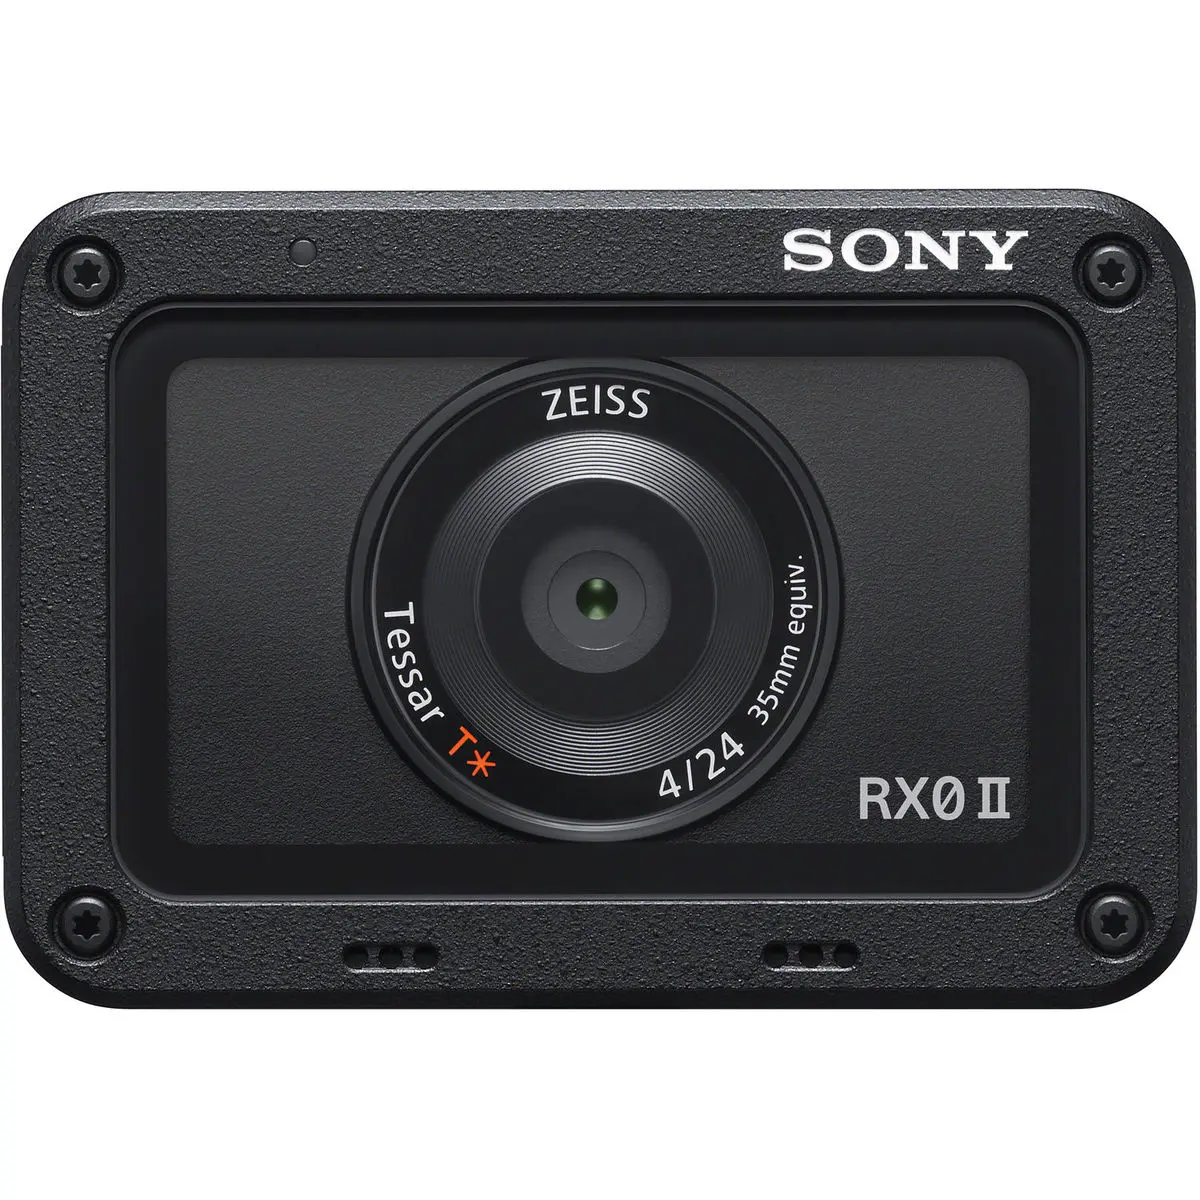 1. Sony Cyber-shot DSC-RX0 II + Shooting grip Camera